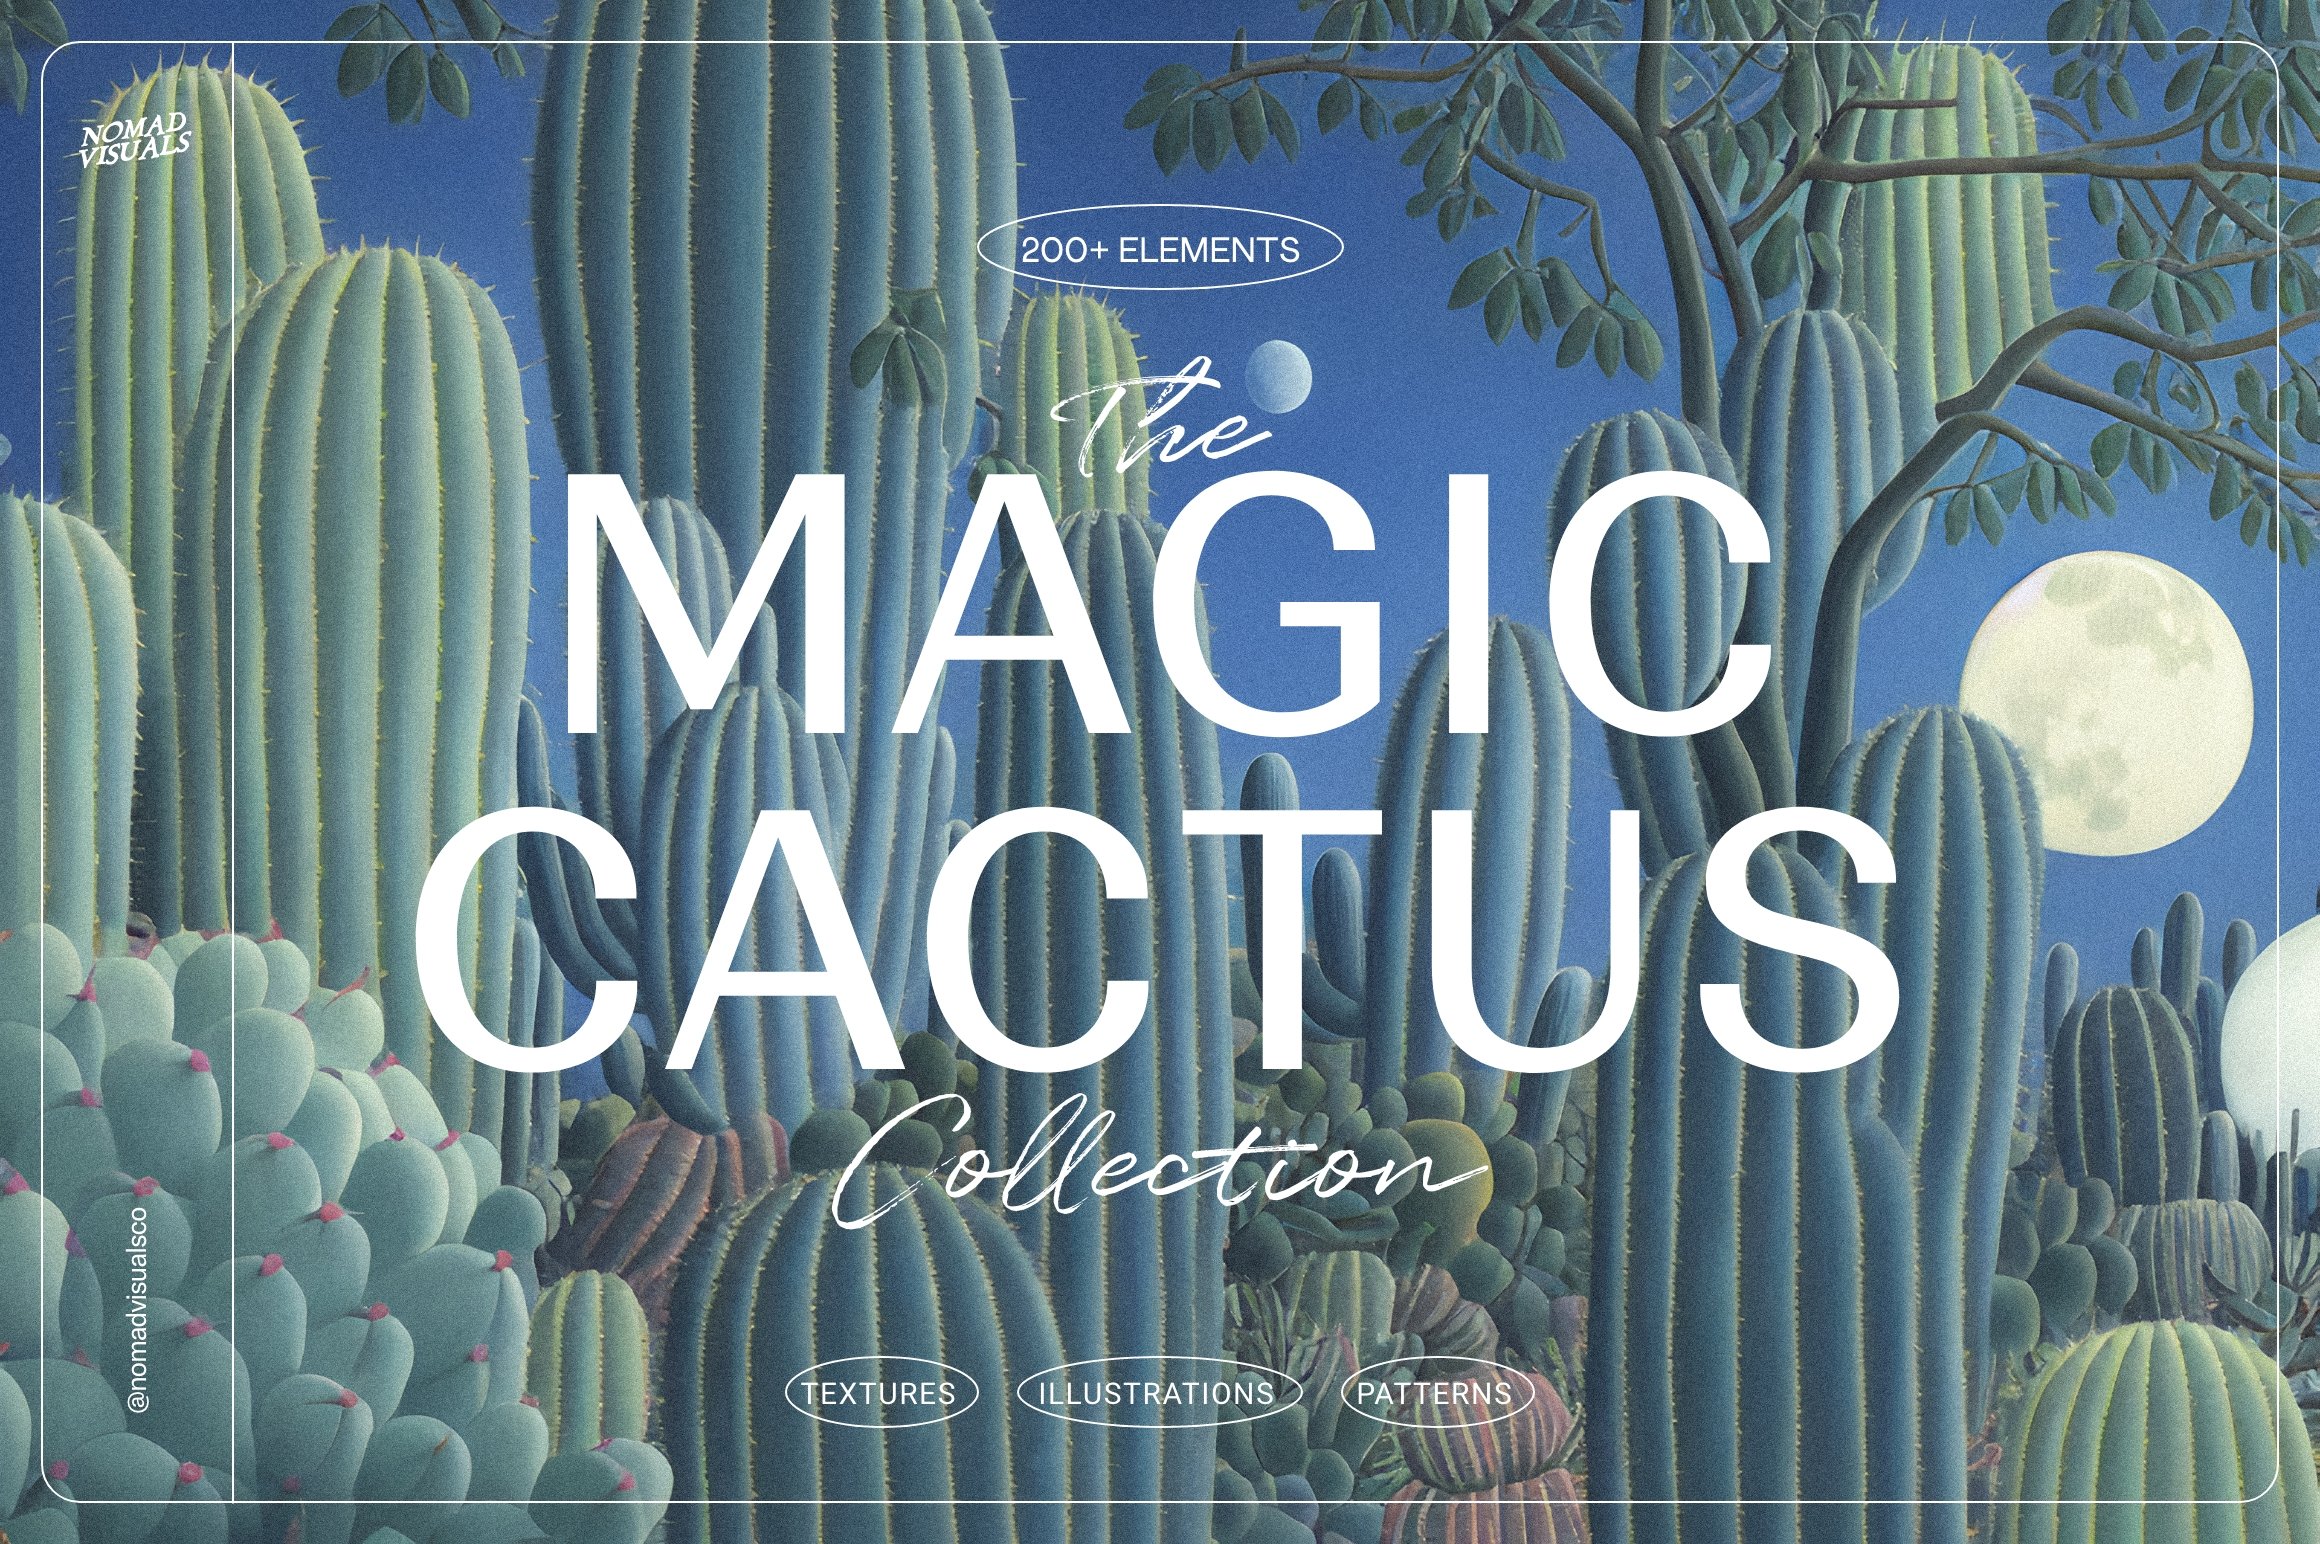 Magic Cactus cover image.